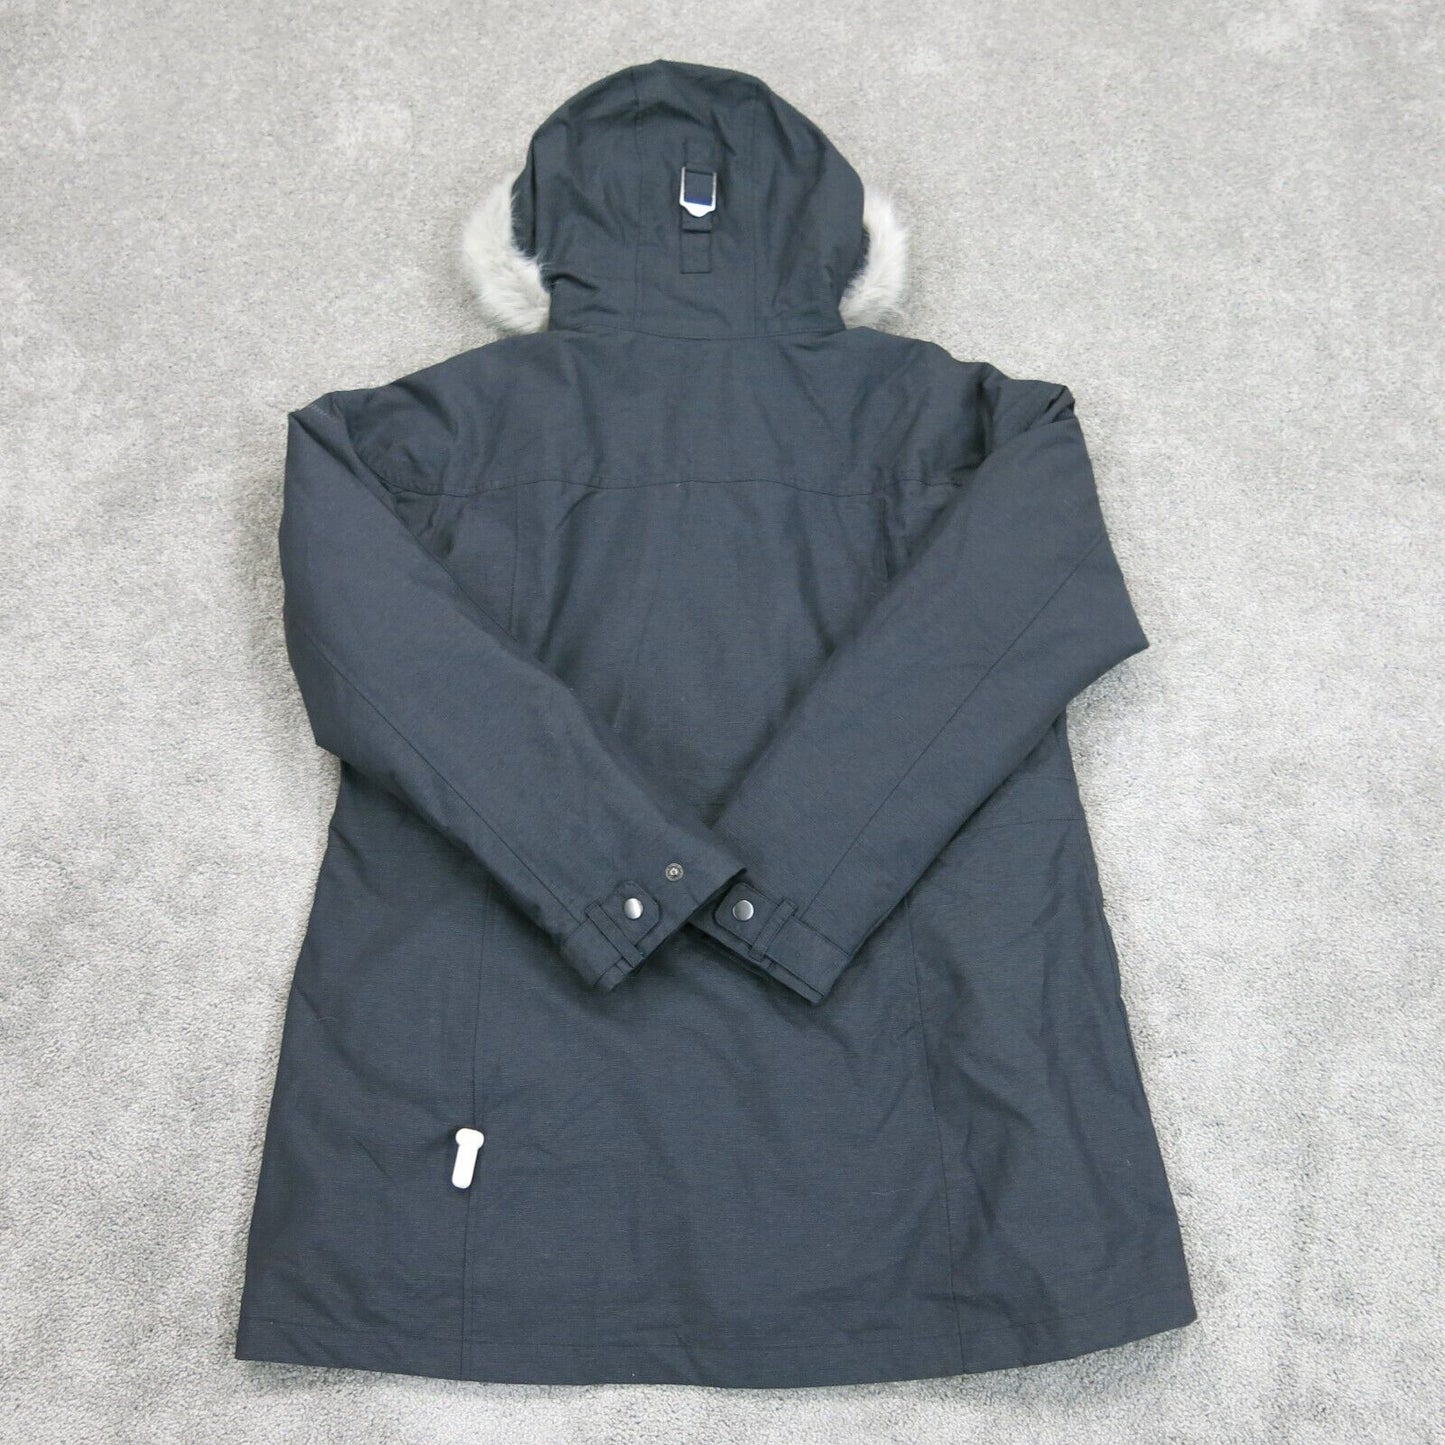 Interchange Women Full Zip Up Hooded Windbreaker Jacket Long Sleeve Black SZ XL